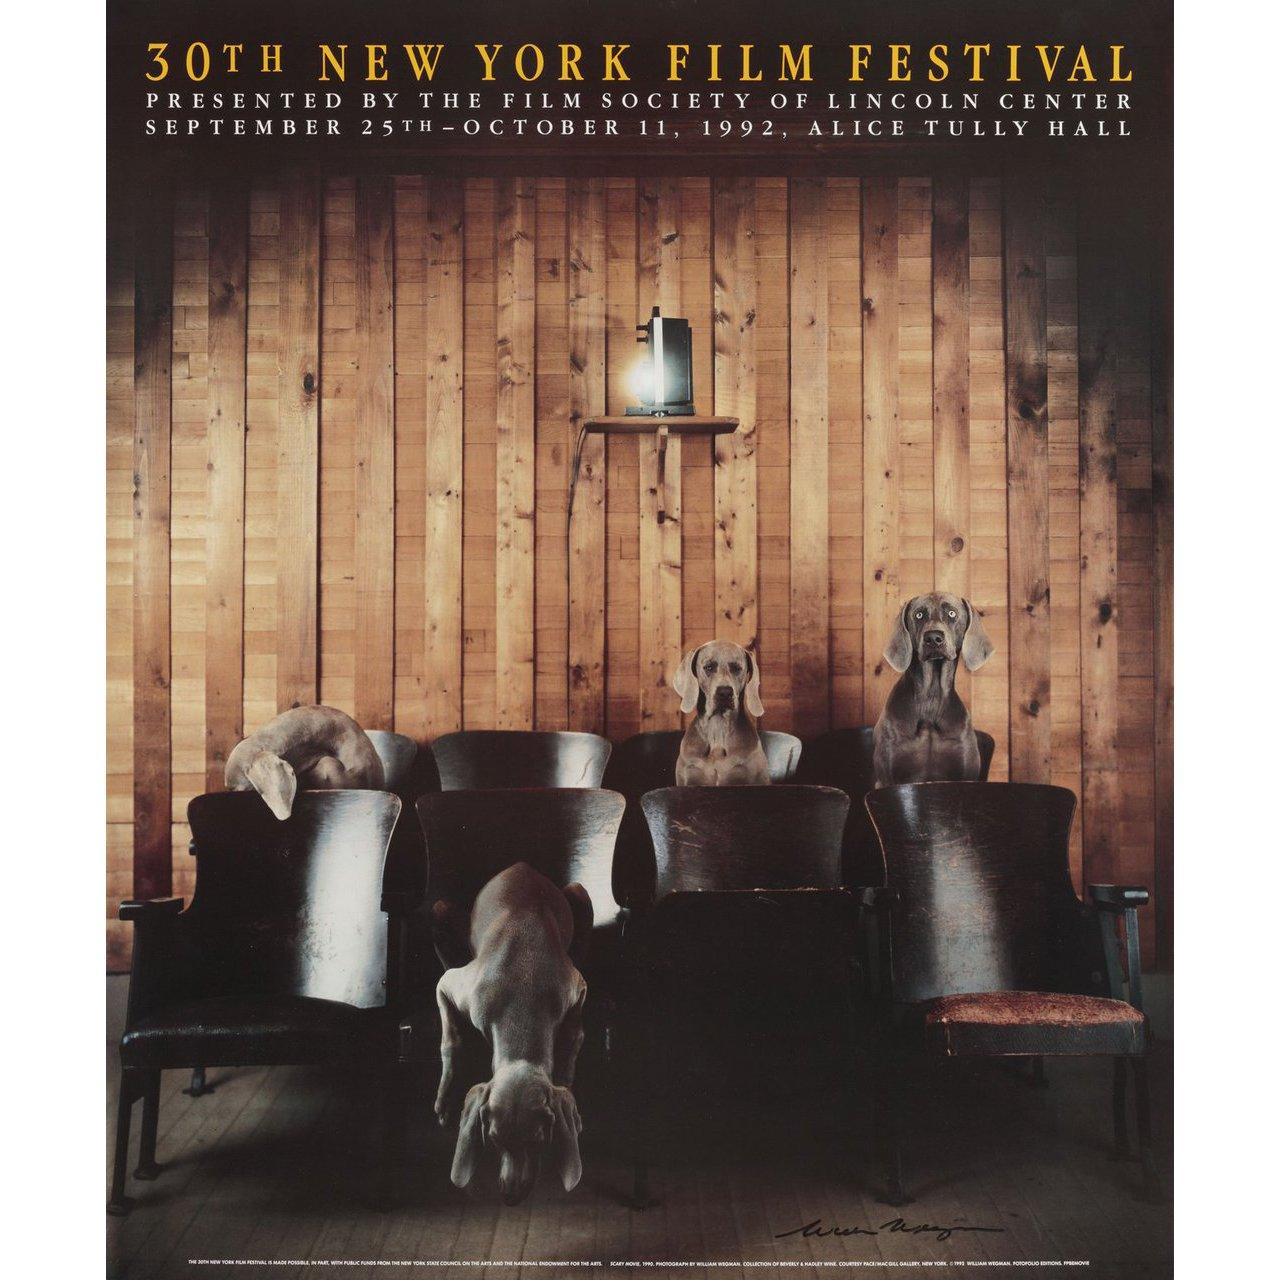 Affiche originale américaine de 1992 réalisée par William Wegman pour le festival du film de New York en 1963. Signé par William Wegman. Très bon état, roulé. Veuillez noter que la taille est indiquée en pouces et que la taille réelle peut varier